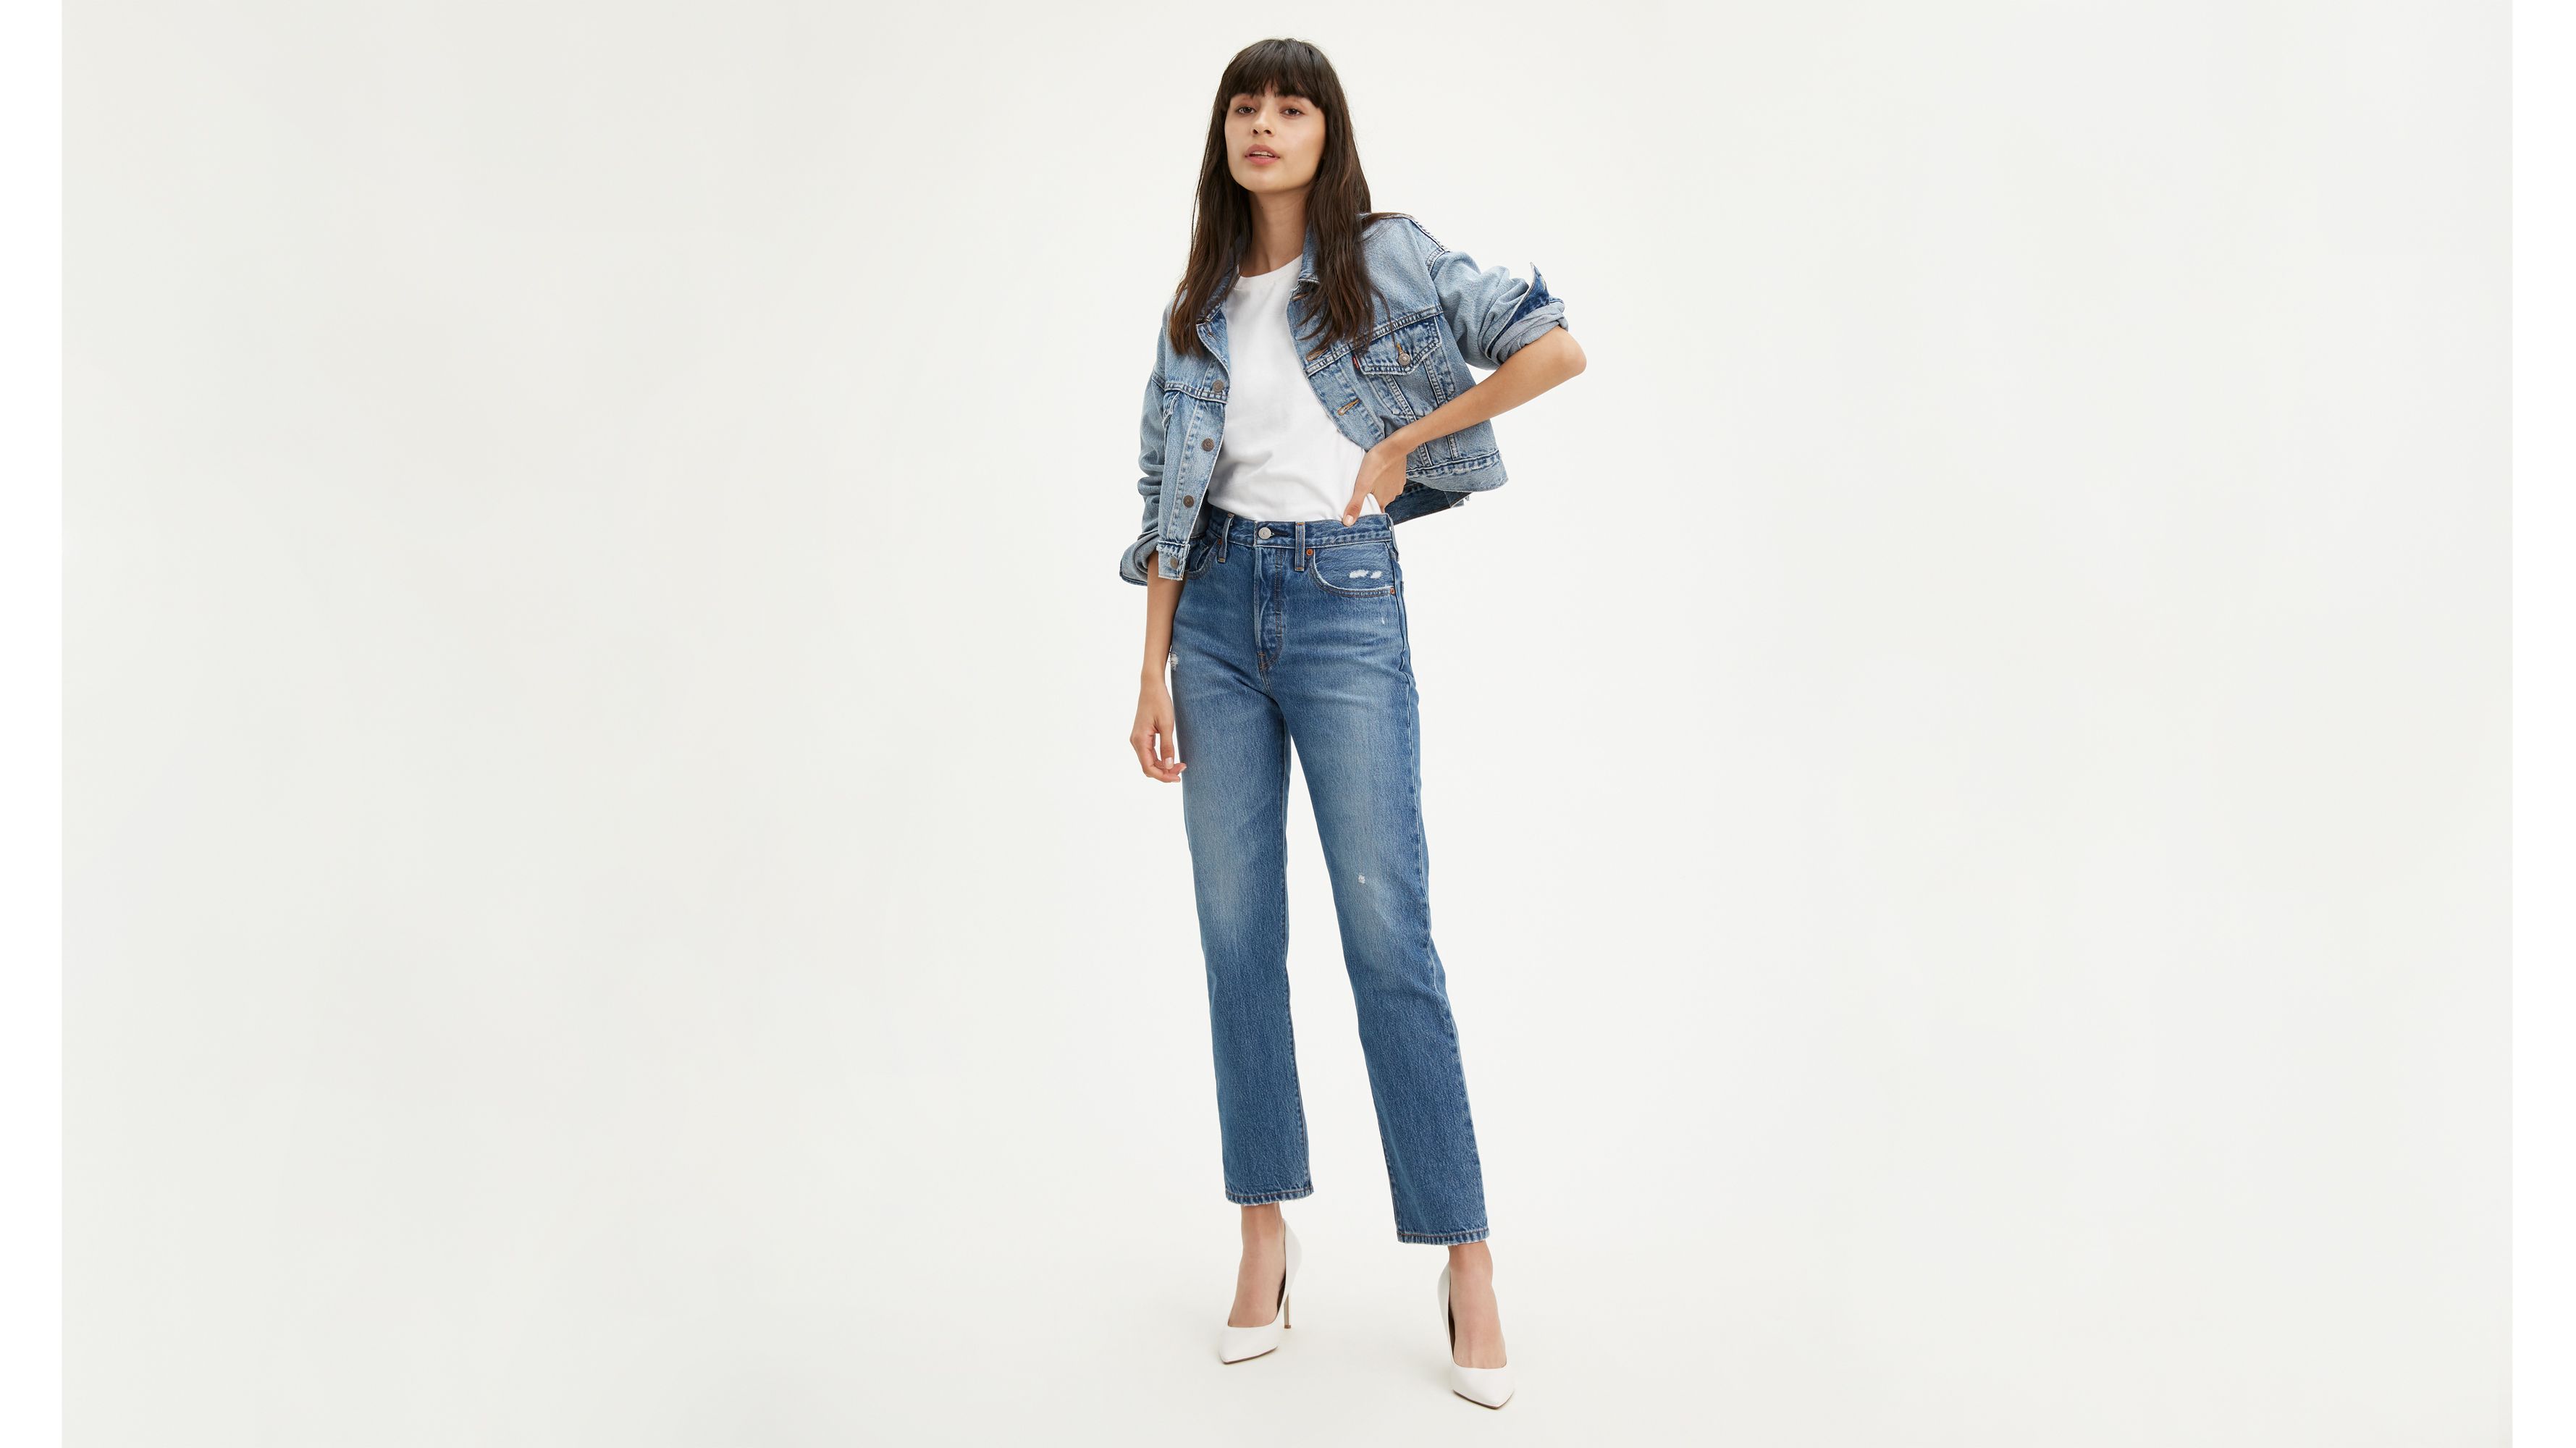 levis 501 women's jeans review